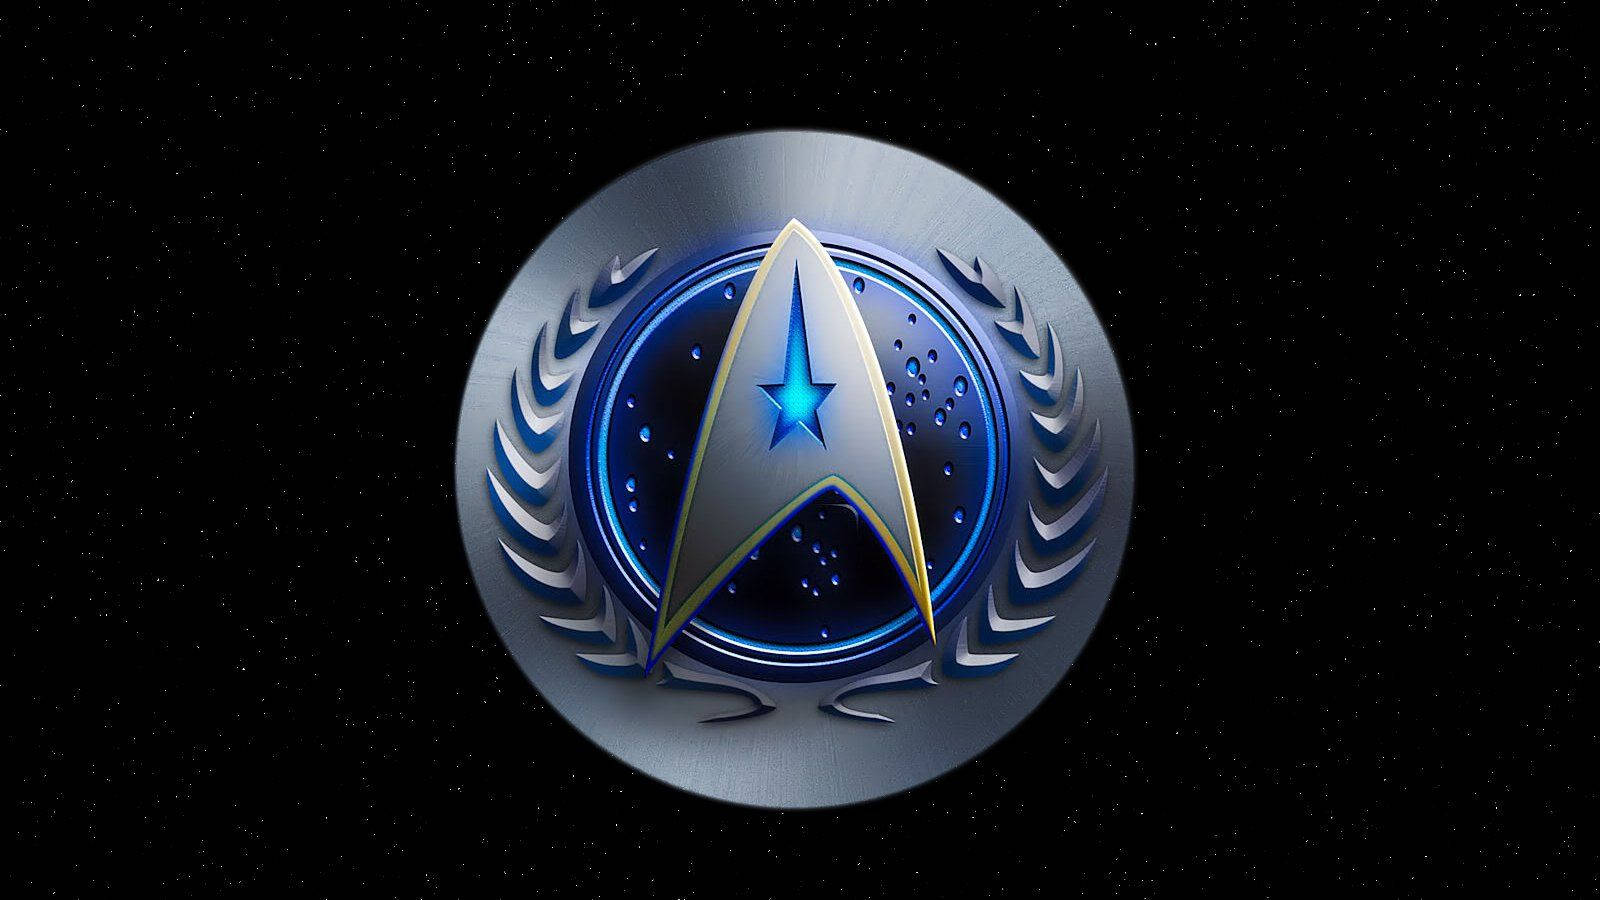 Hd Star Trek Federation Logo